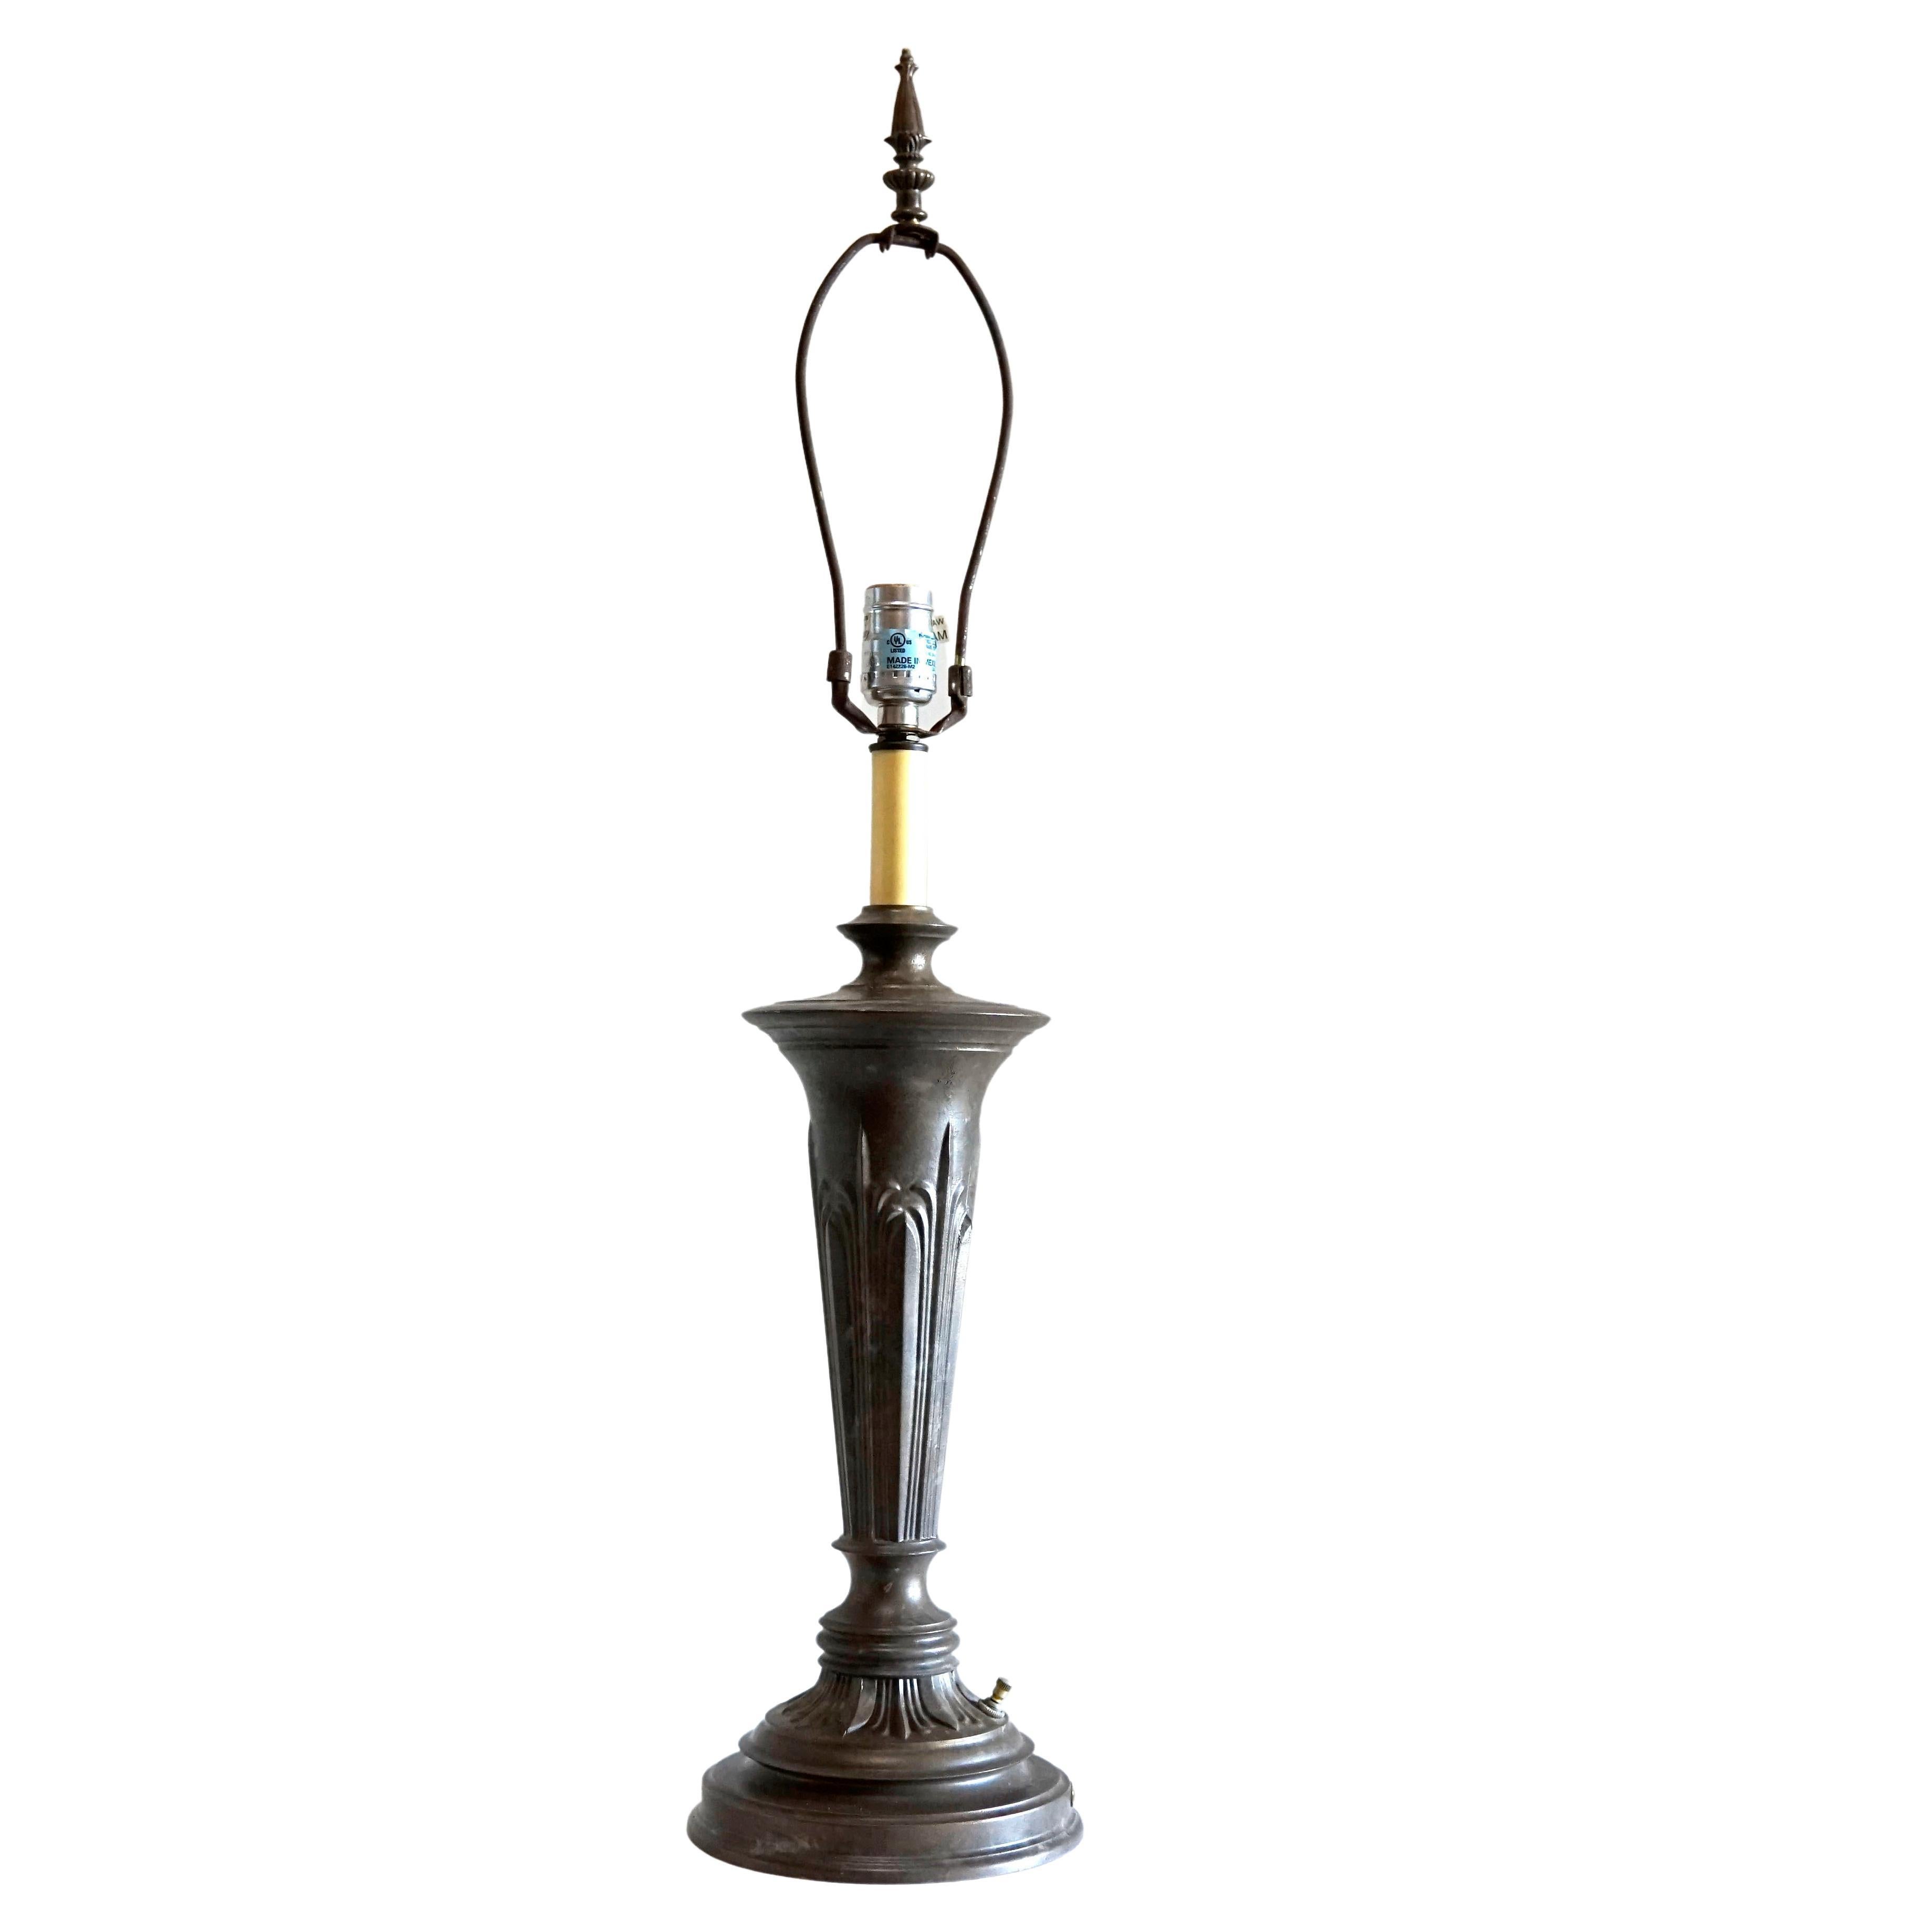 Neoklassizistische, Renaissance-Revival-Tischlampe aus Bronzeguss aus den 1920er Jahren